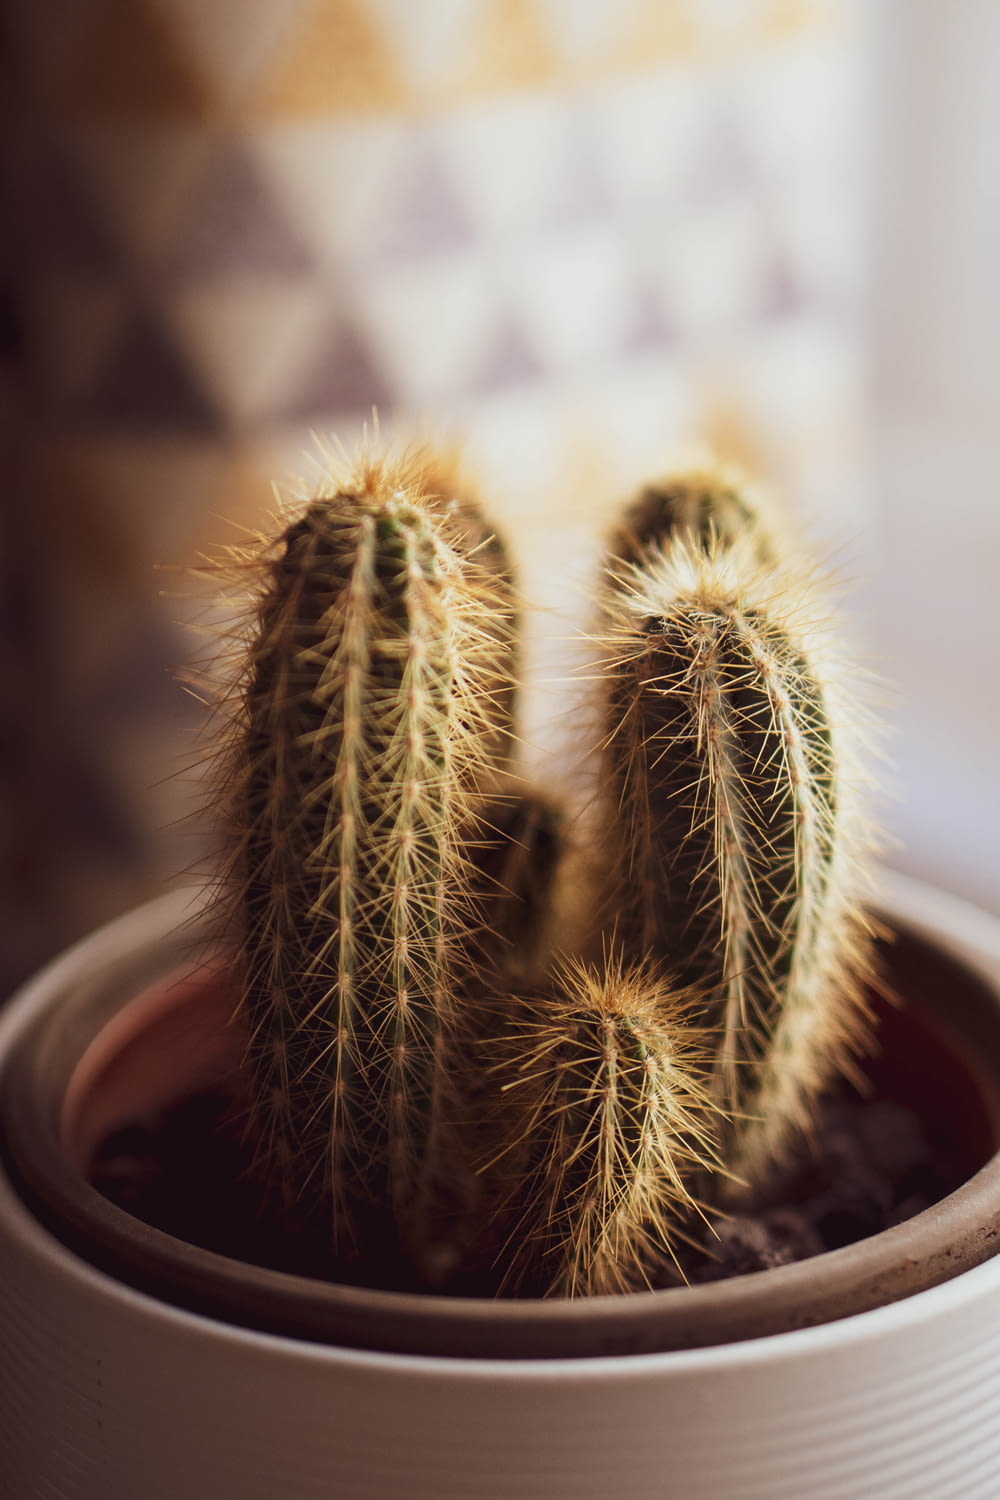 a cactus in a pot